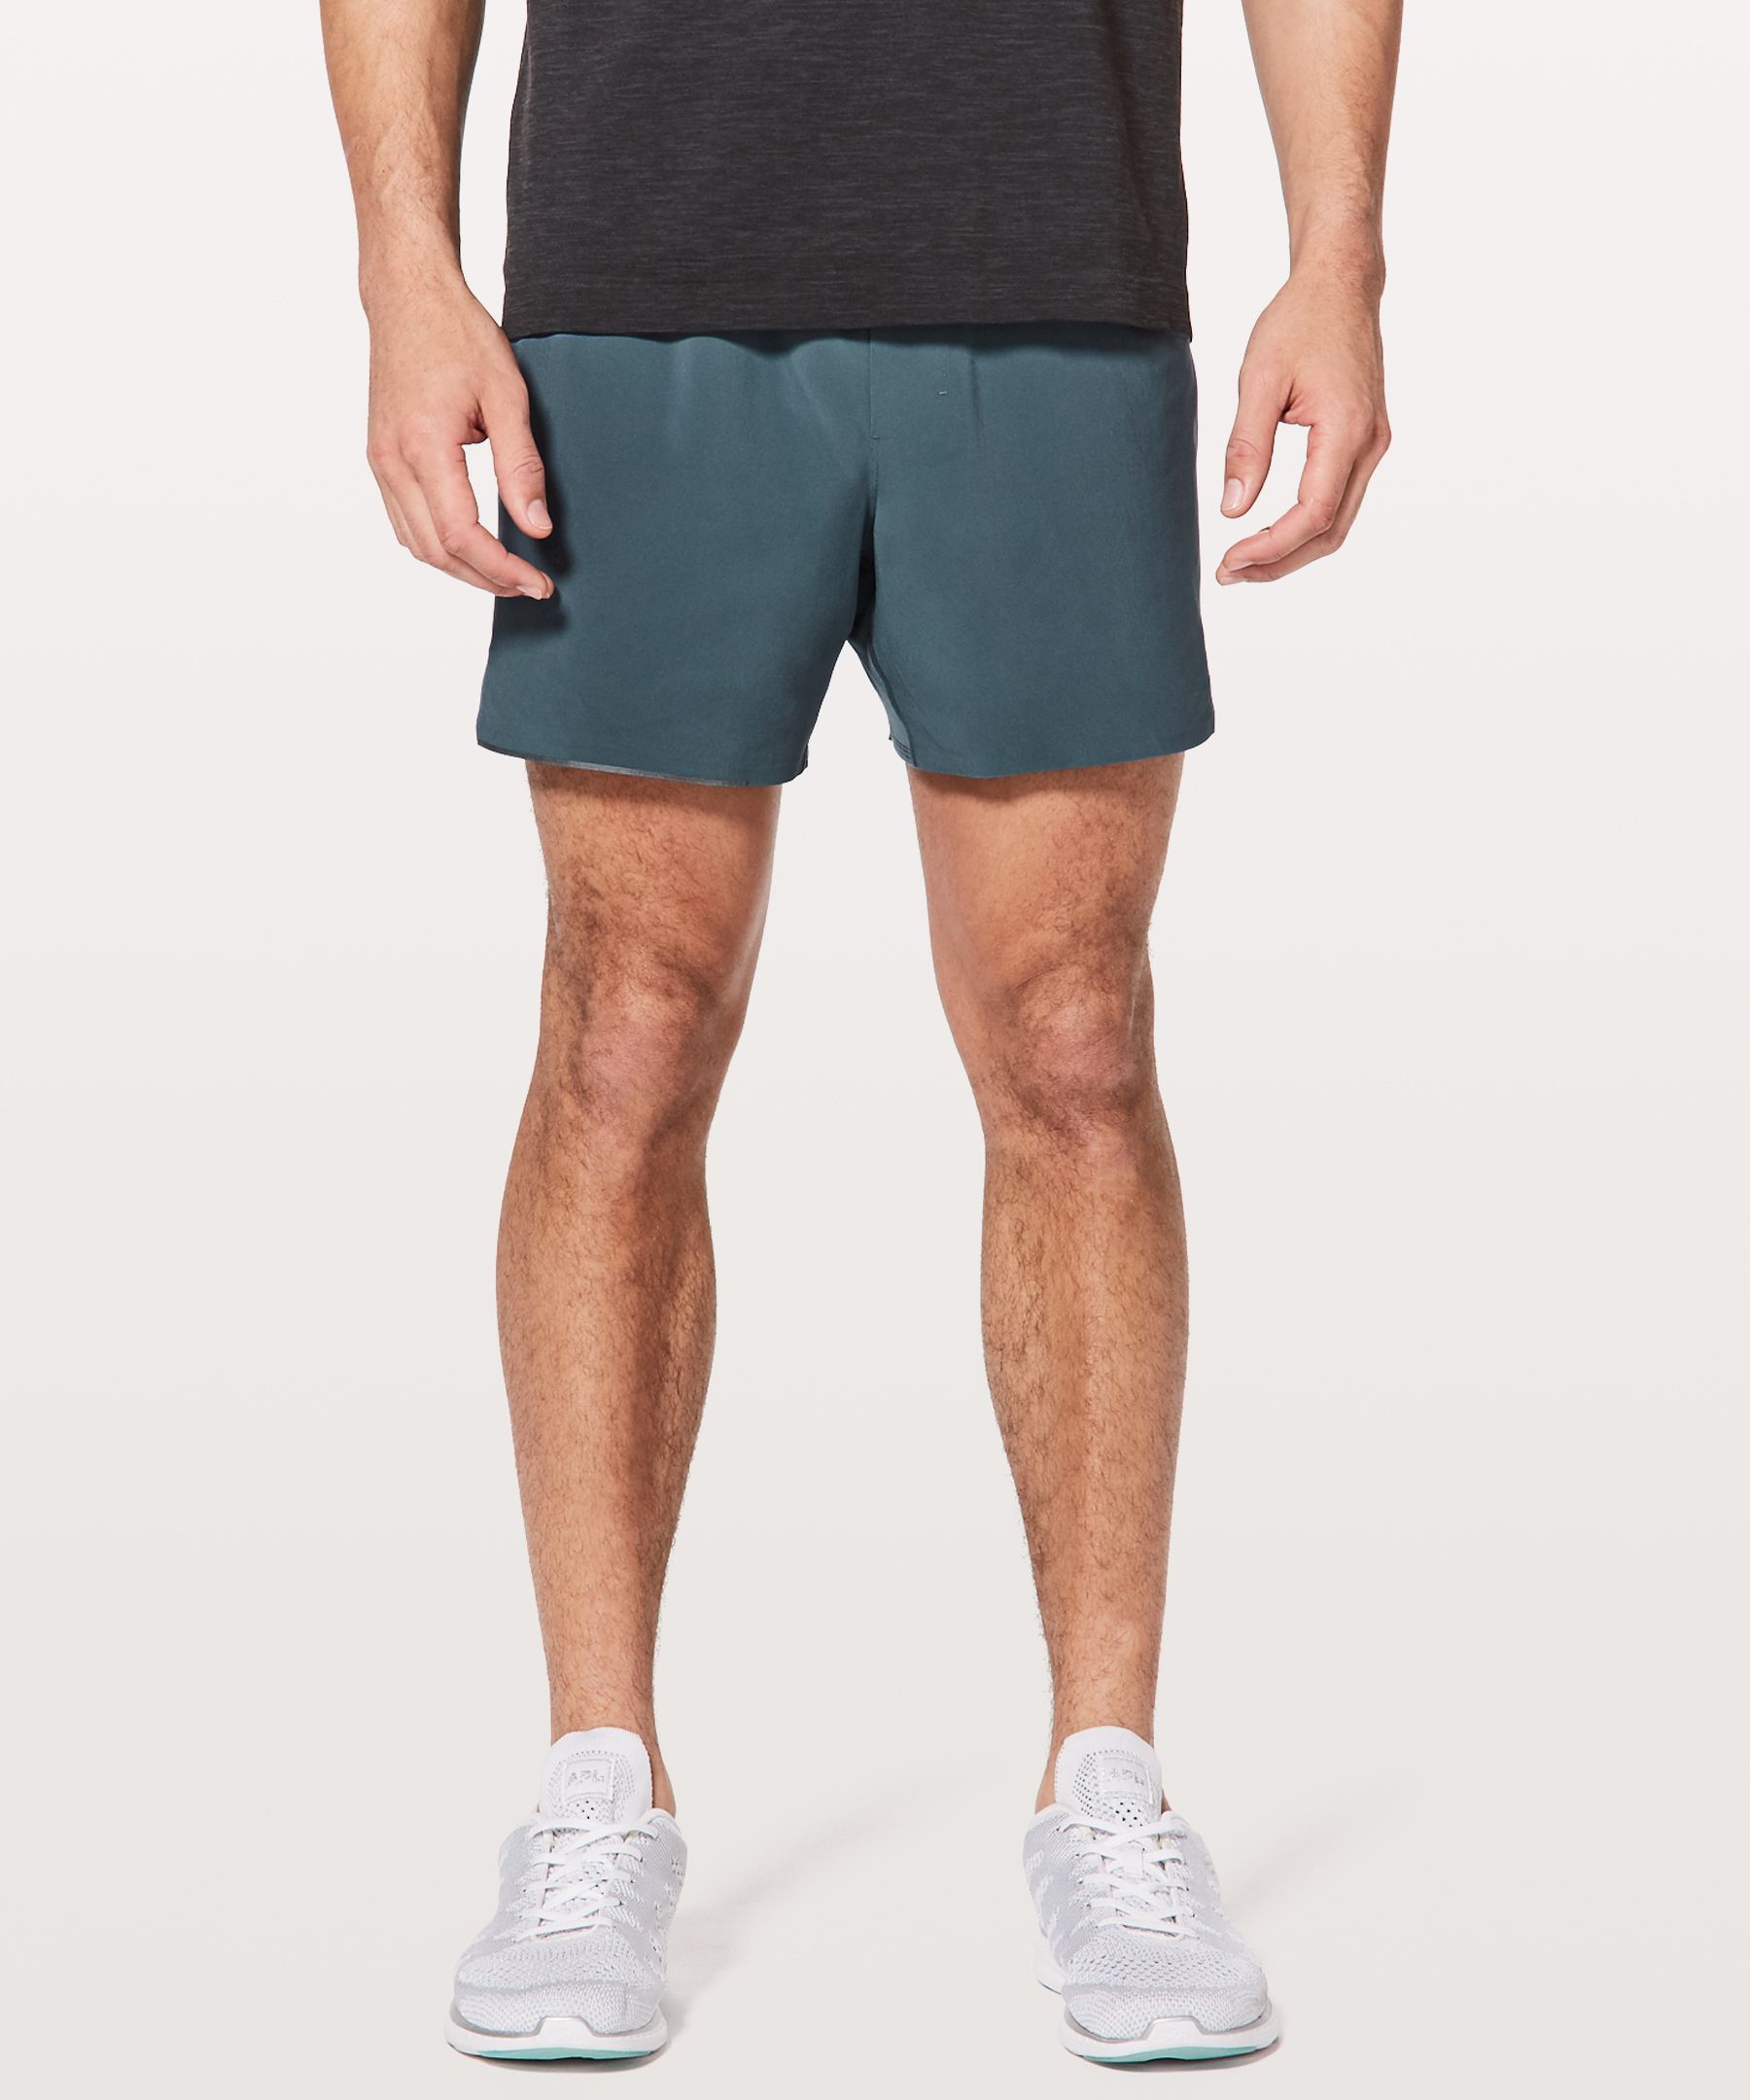 lululemon athletic shorts men